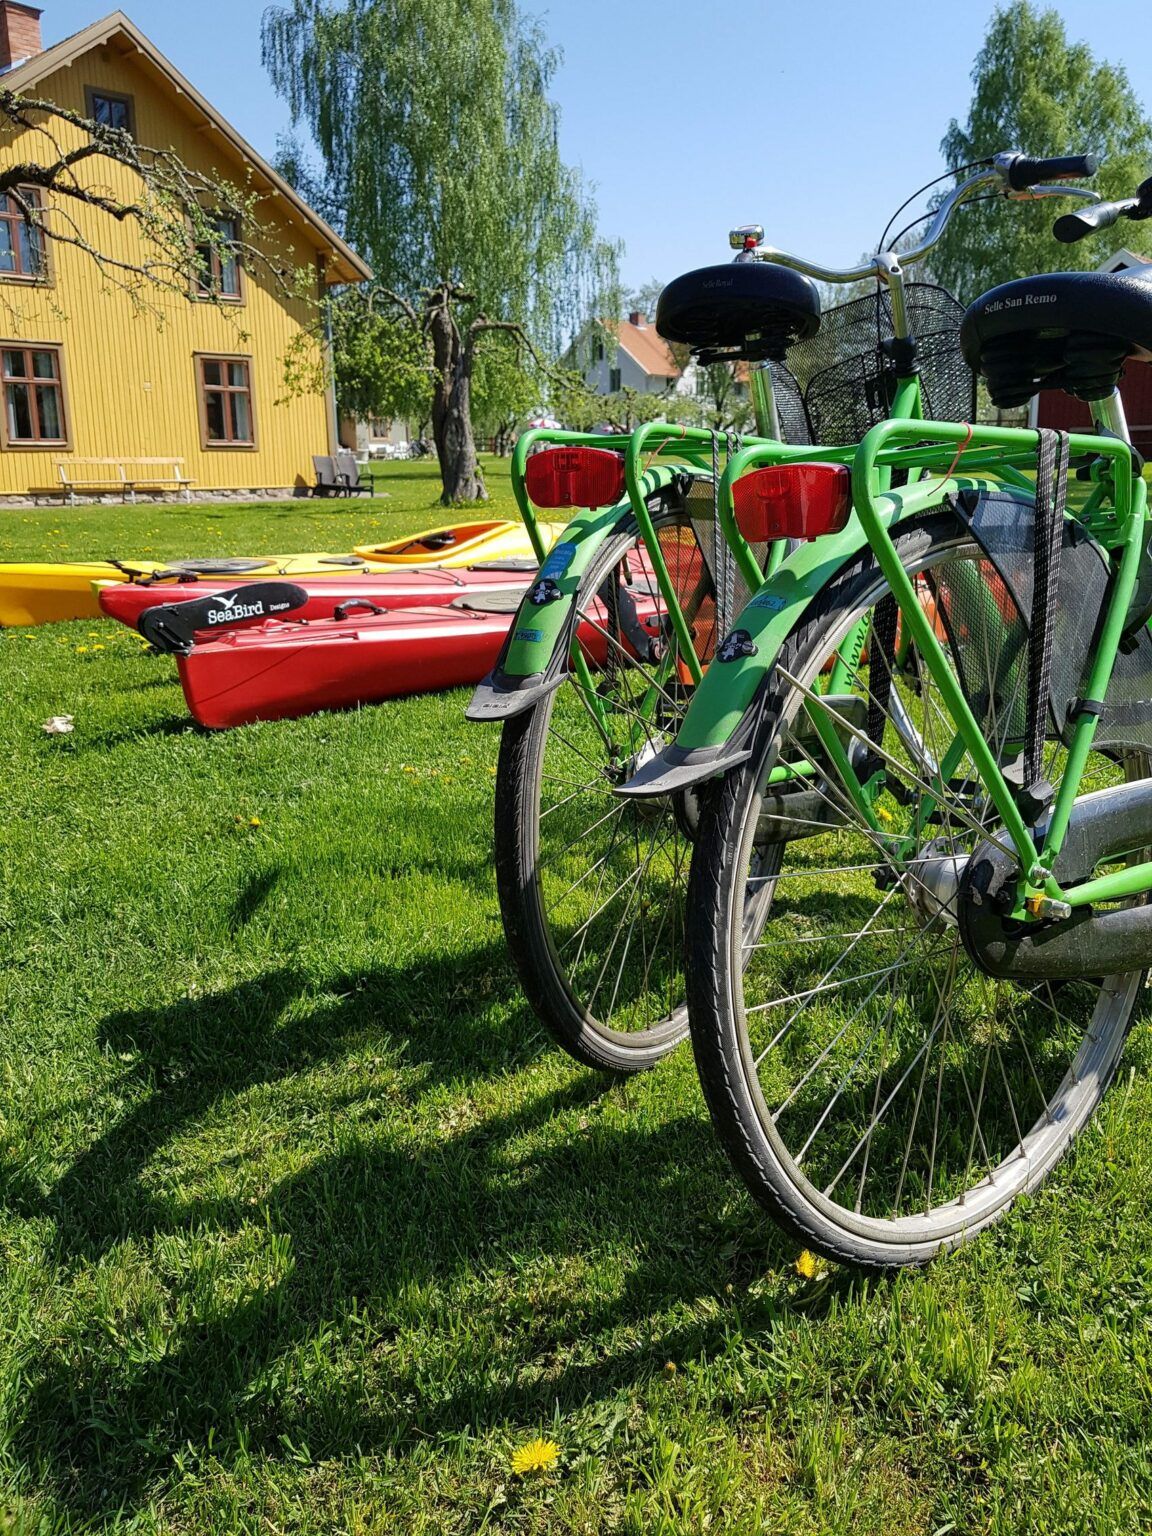 Två gröna cyklar står uppställda på en gräsplan. I bakgrunden ligger röda och gula kanoter.